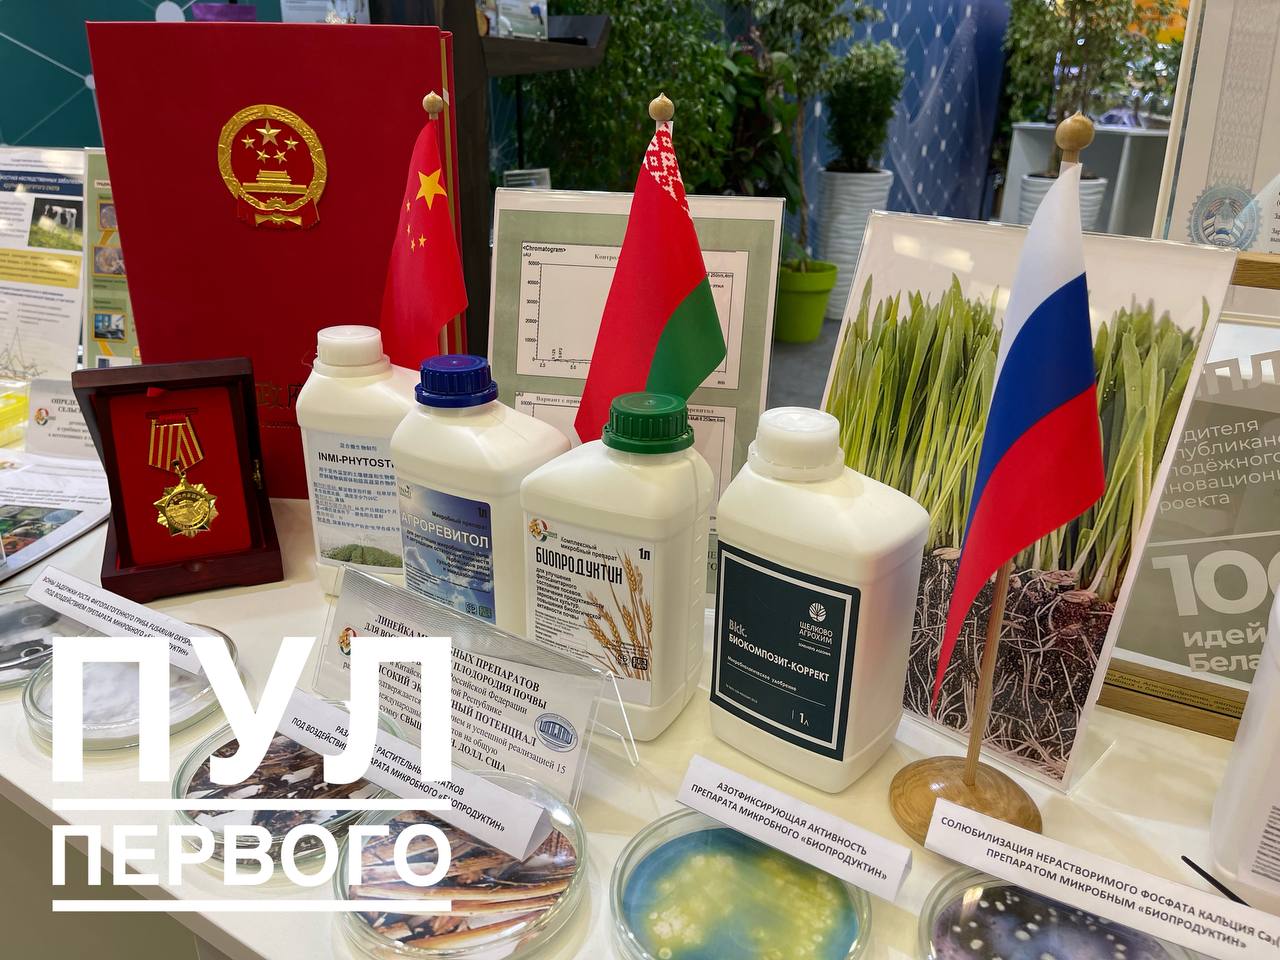 Выставка "Беларусь интеллектуальная" открывается в Минске - фото